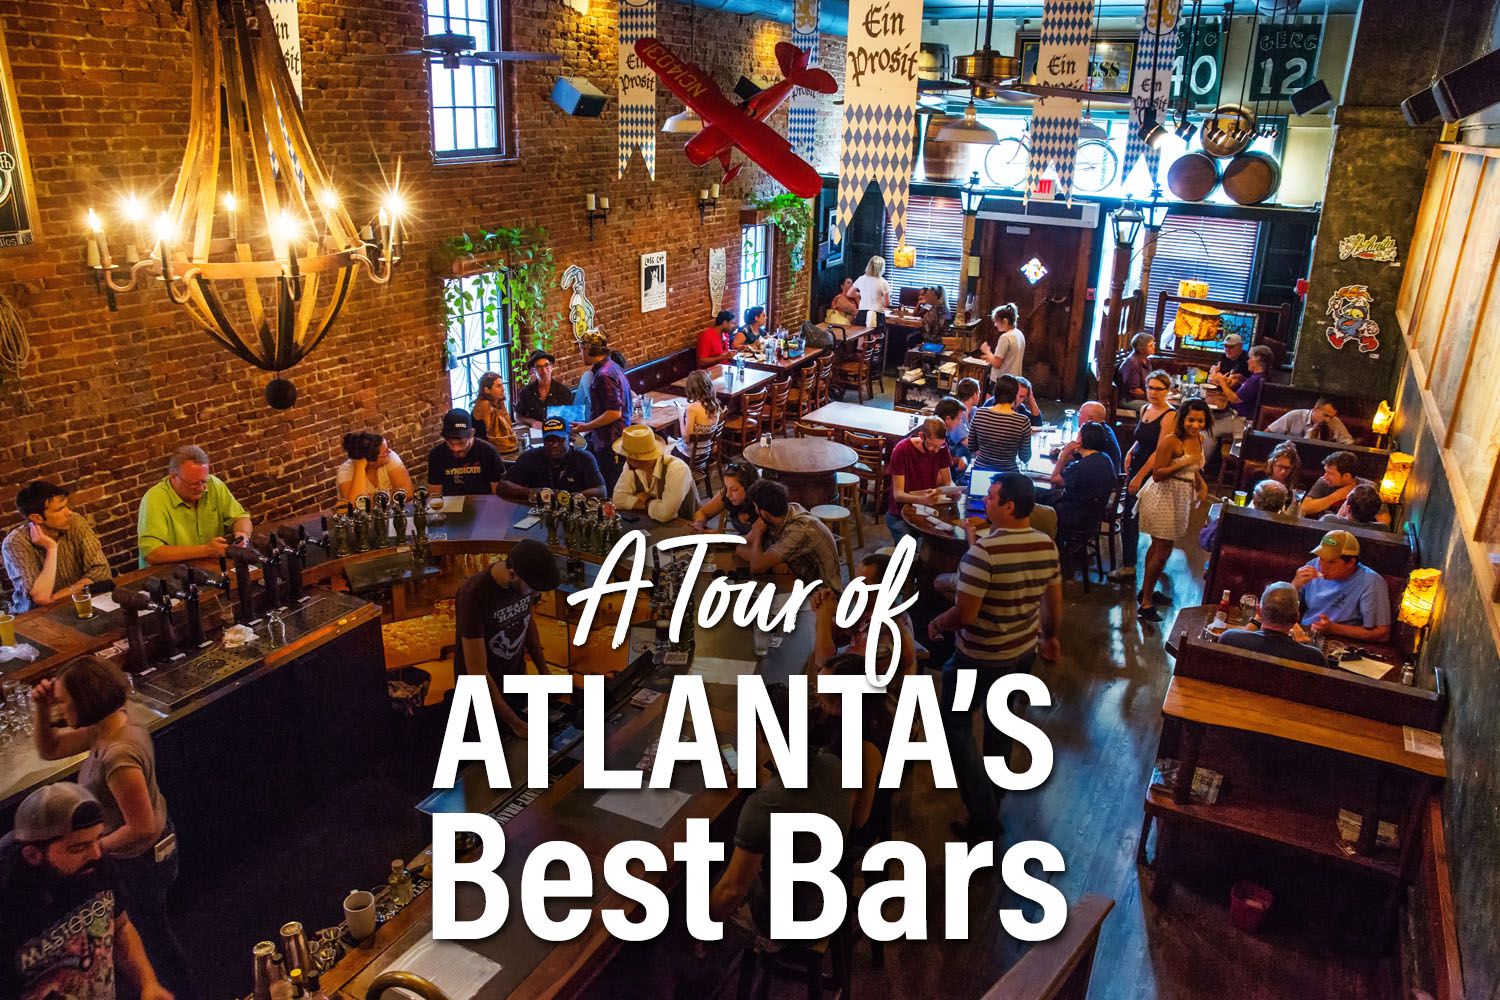 Atlantas Best Bars